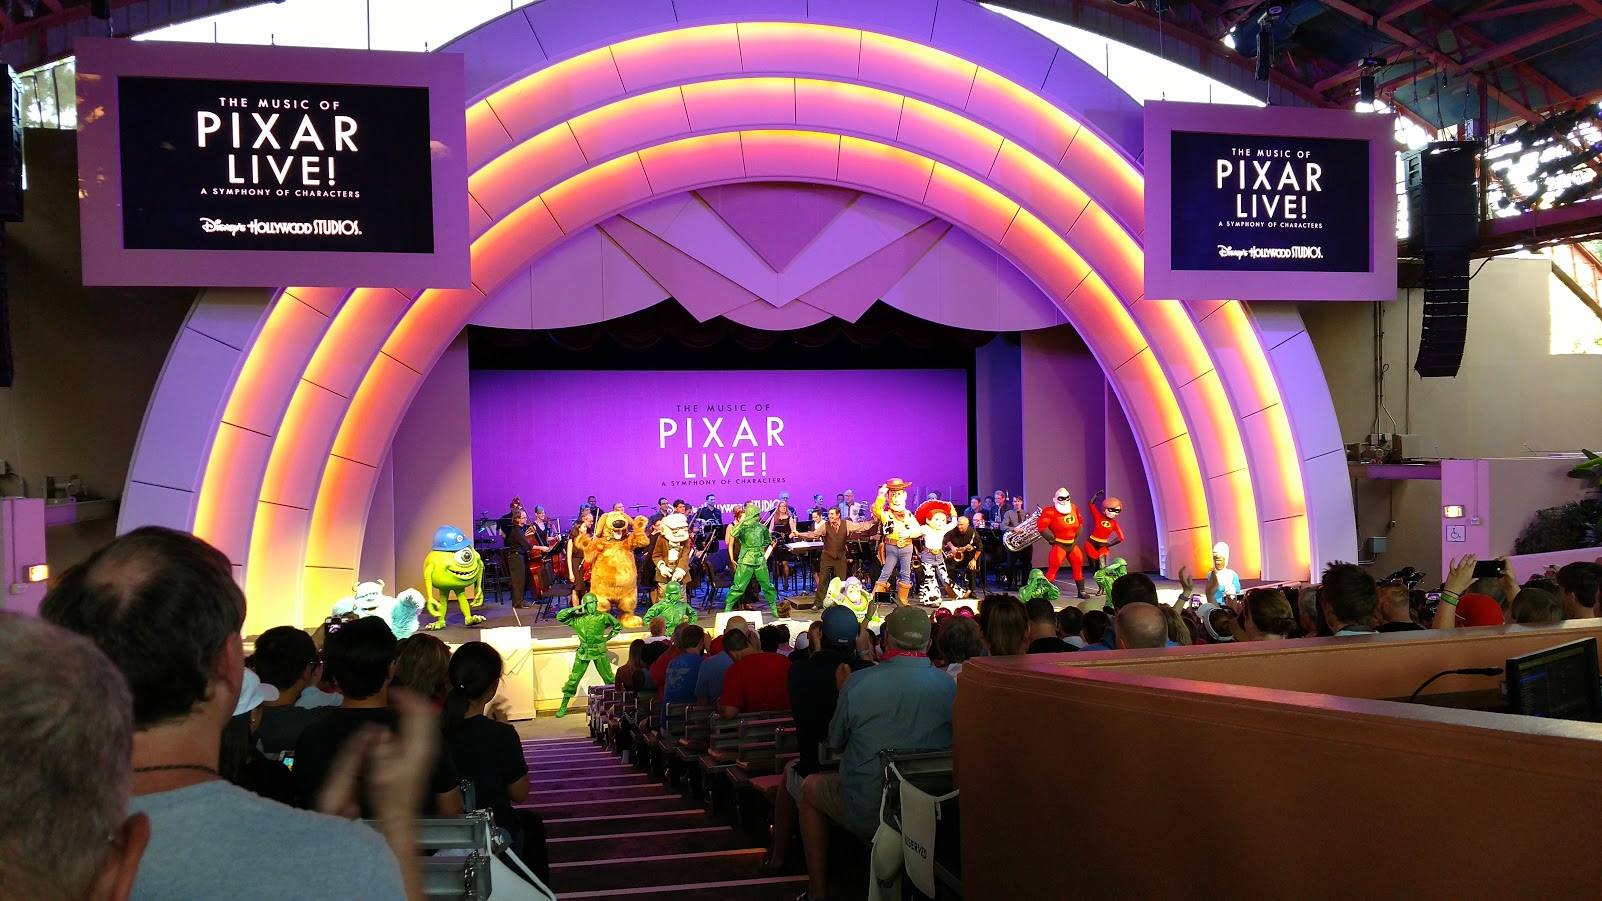 Disney Seeks Feedback on The Music of Pixar Live! Opening Weekend Performances